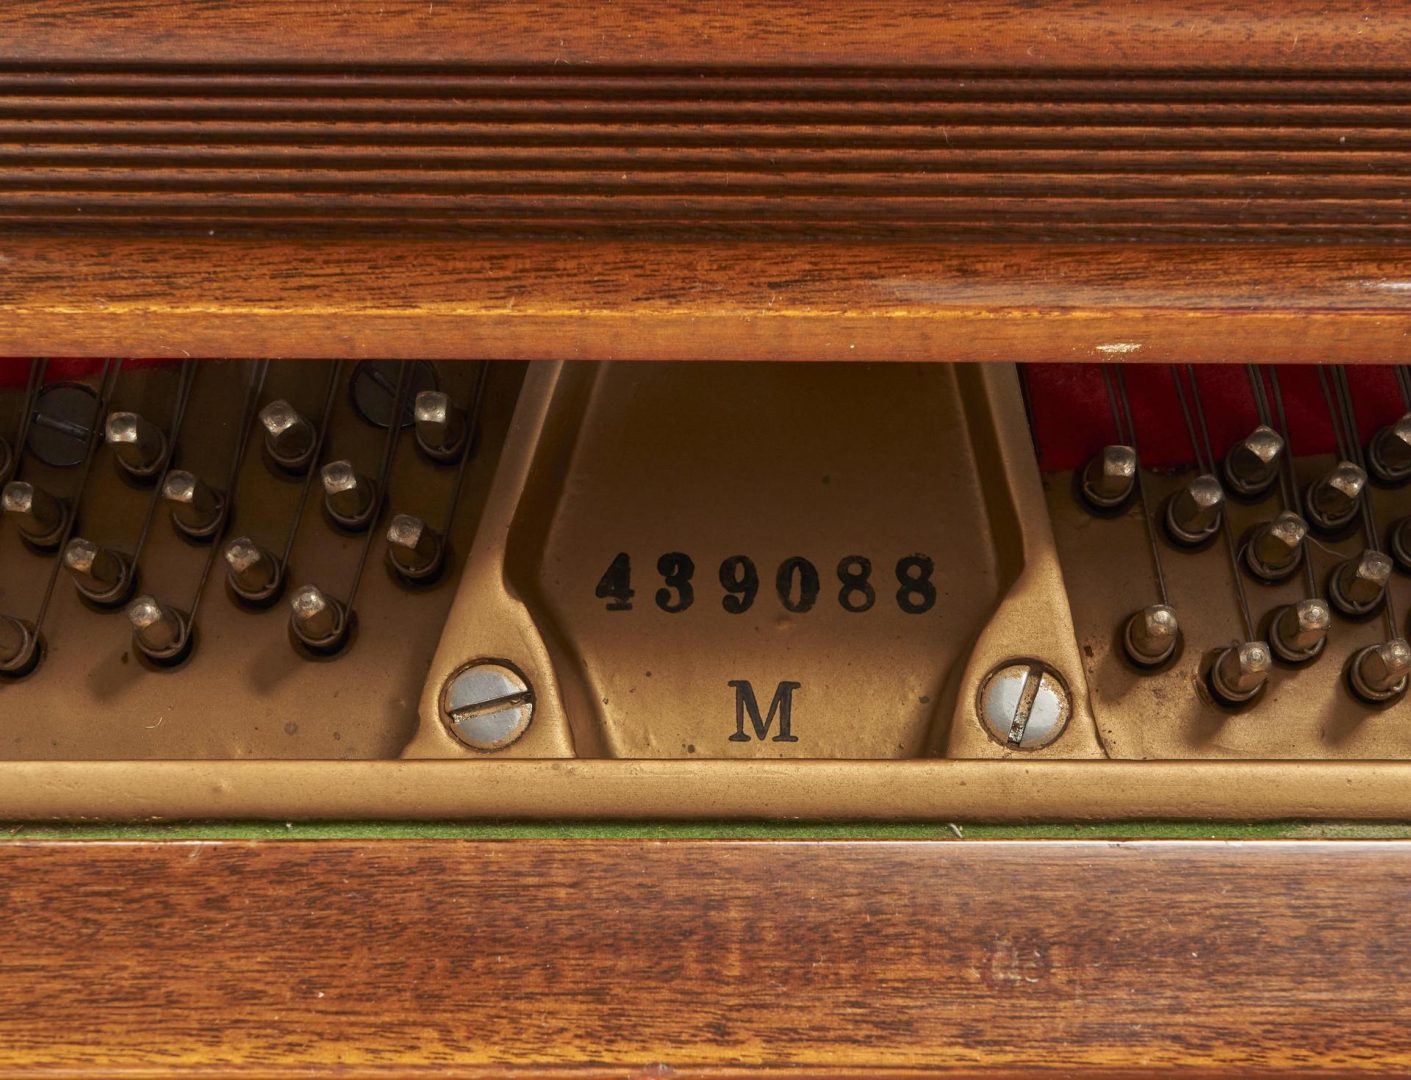 Lot 554: Steinway & Sons Model M Grand Piano, Mahogany Finish